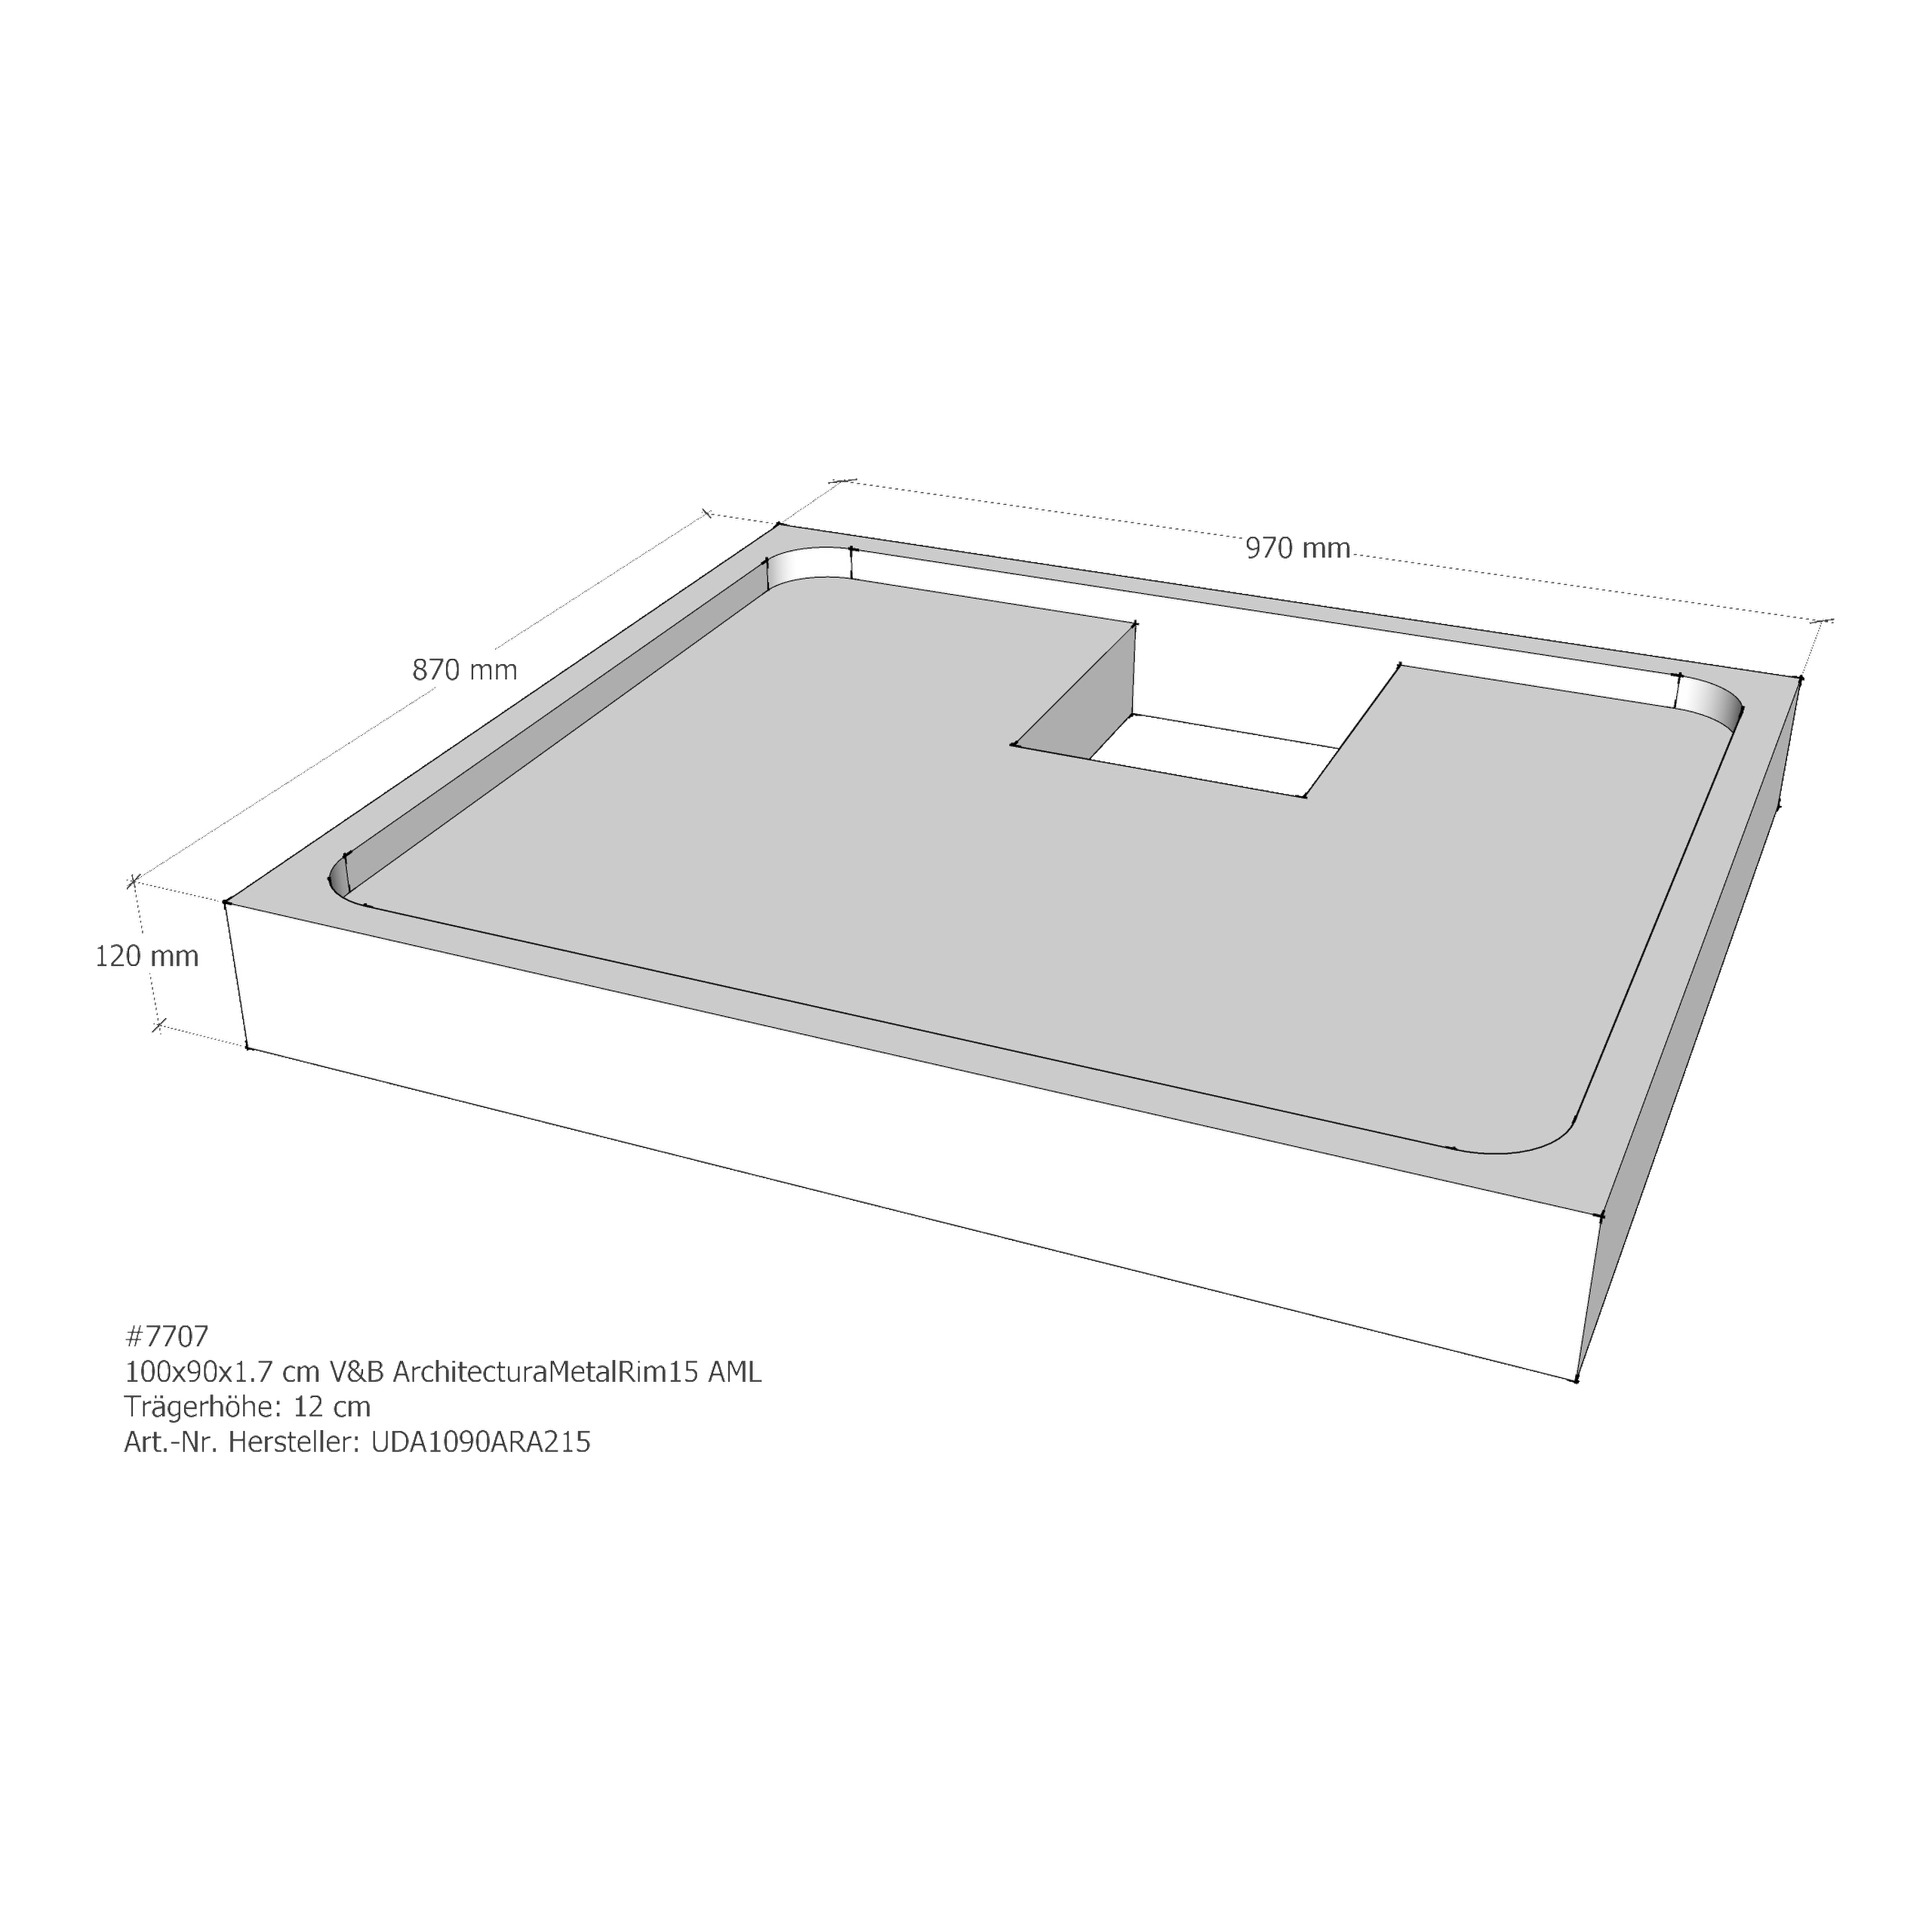 Duschwannenträger für Villeroy & Boch Architectura MetalRim 100 × 90 × 1,7 cm